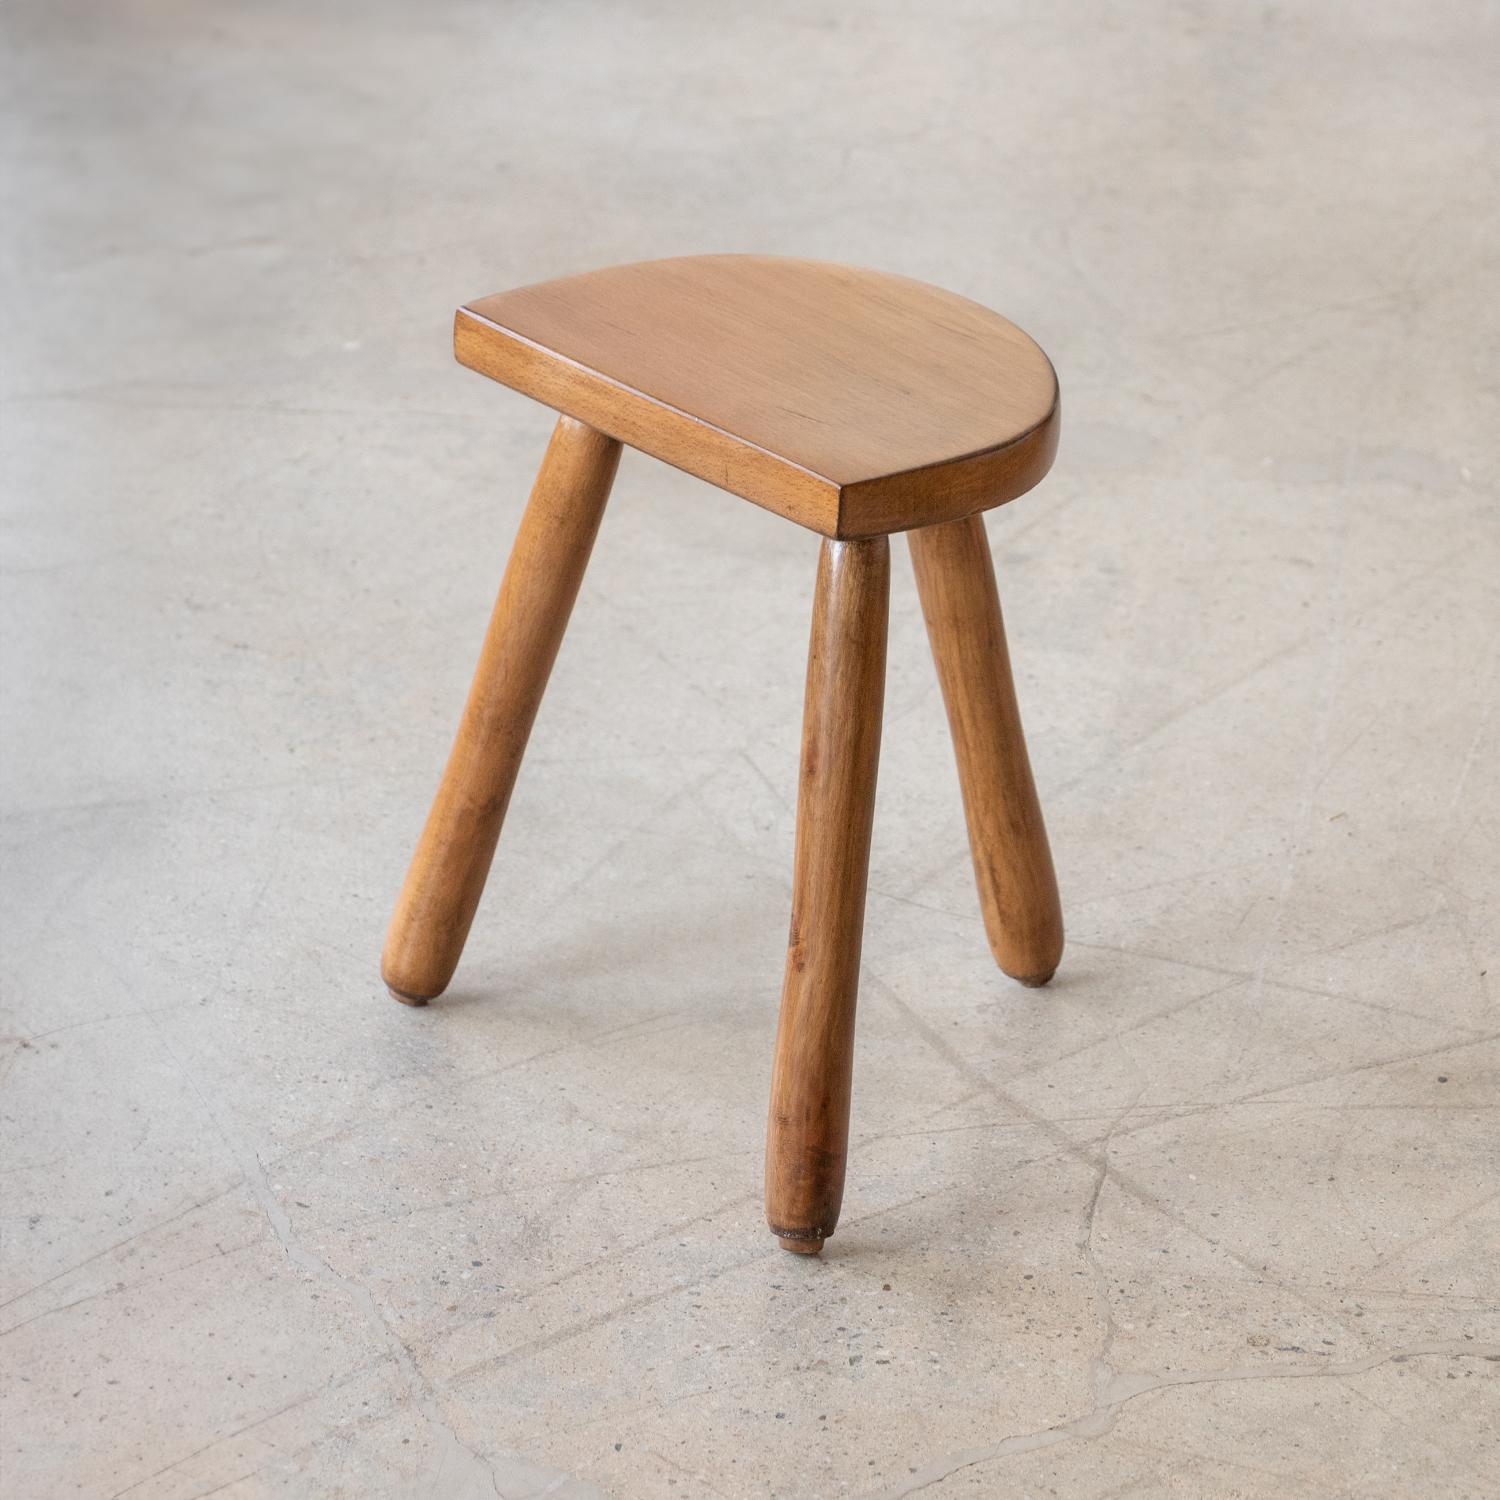 Tabouret court vintage en bois avec assise en demi-cercle et pieds en bois lisse provenant de France. Récemment rénové. Peut être utilisé comme tabouret ou comme table d'appoint à côté des chaises. 



